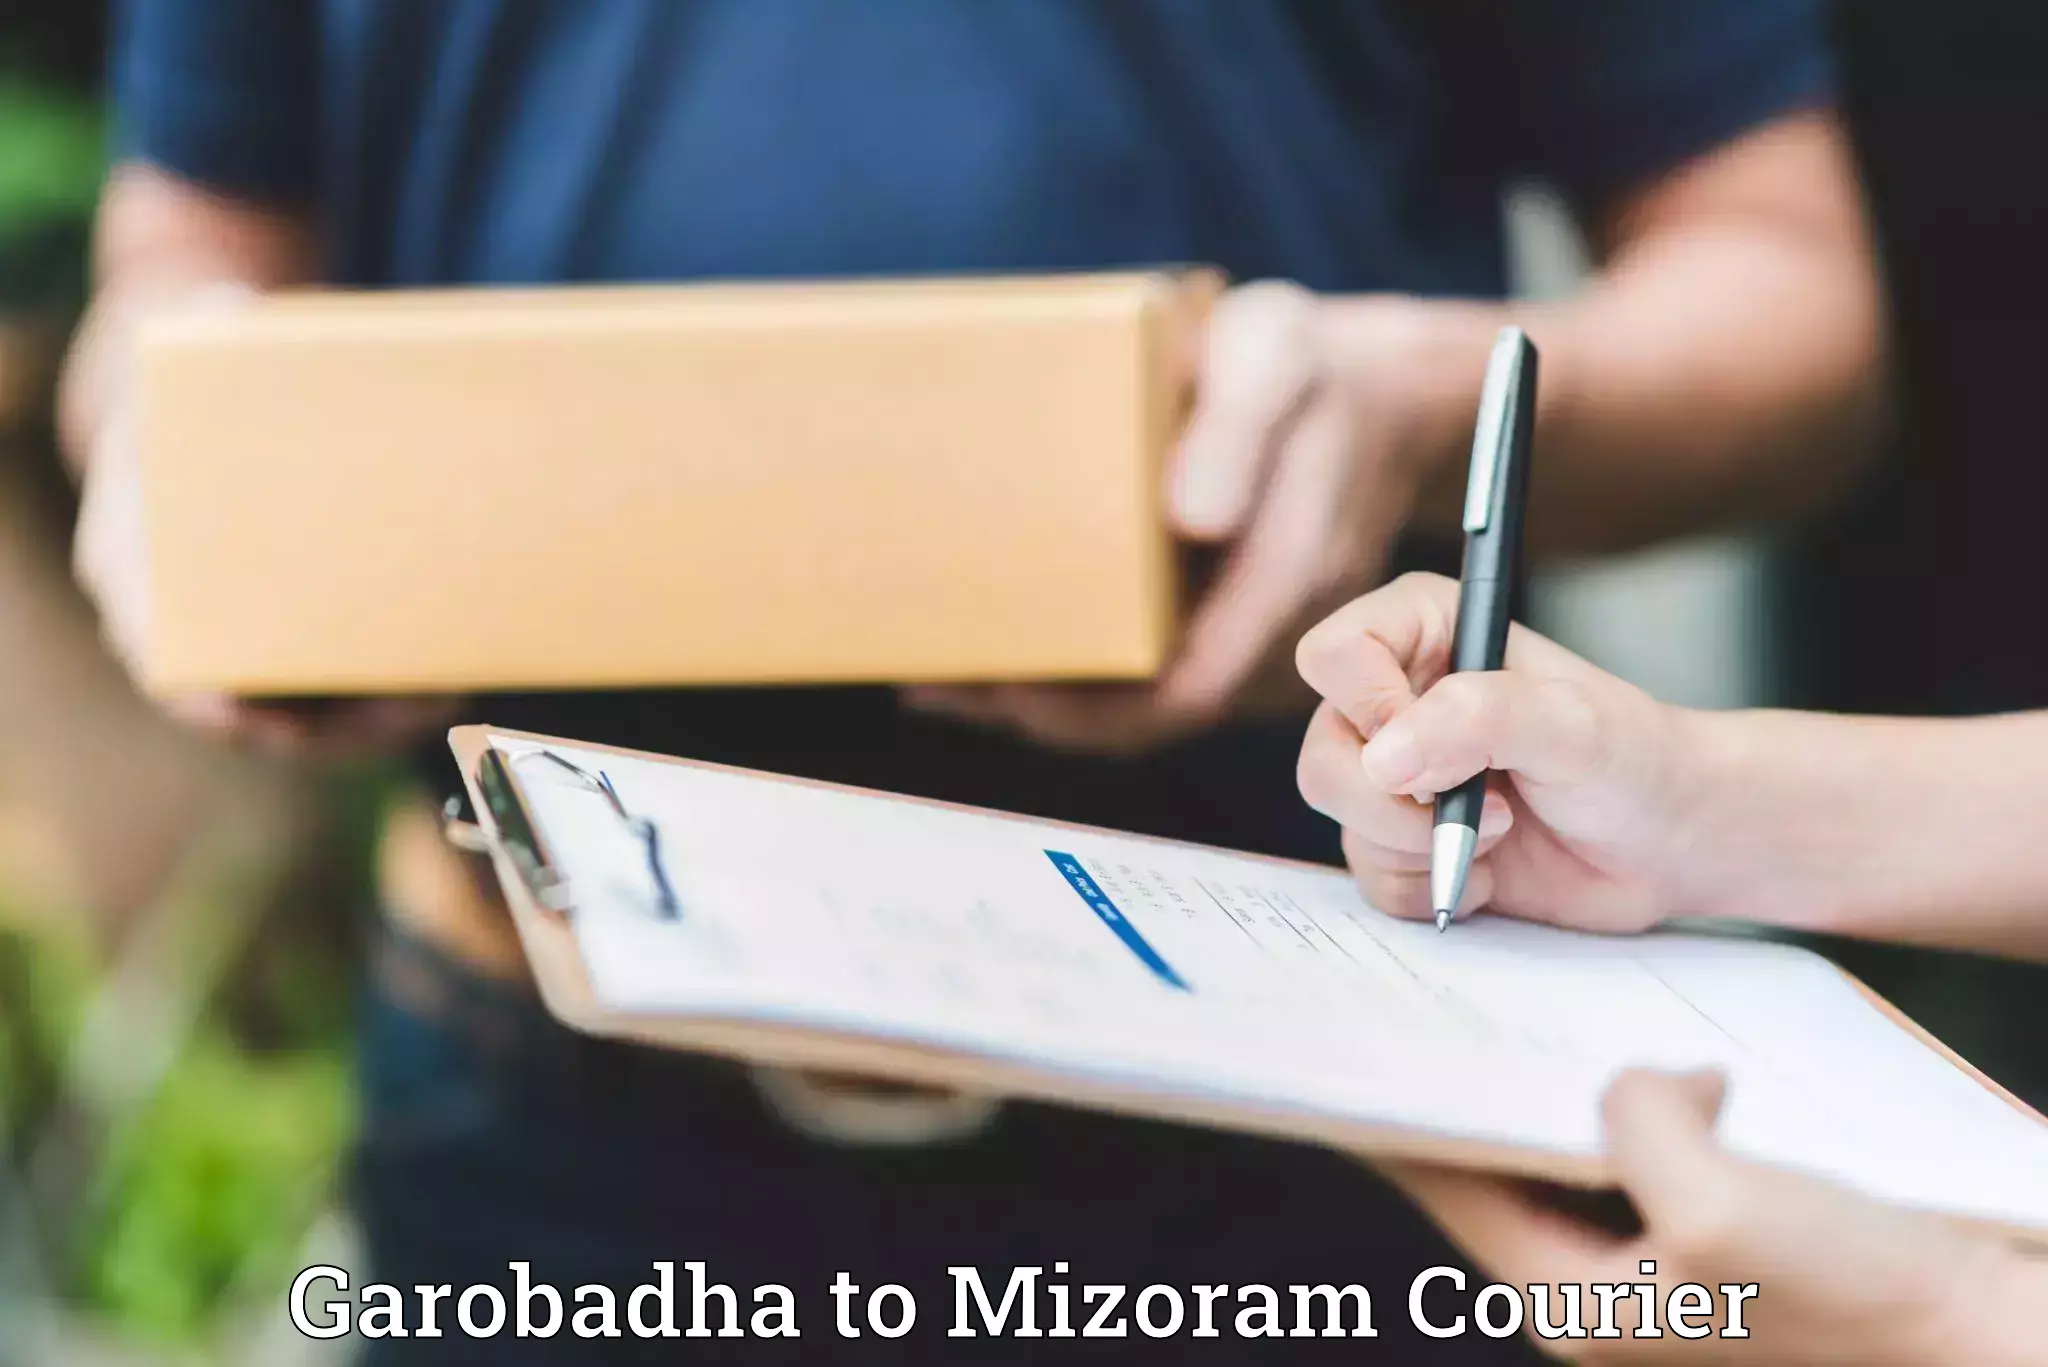 Stress-free moving Garobadha to Mizoram